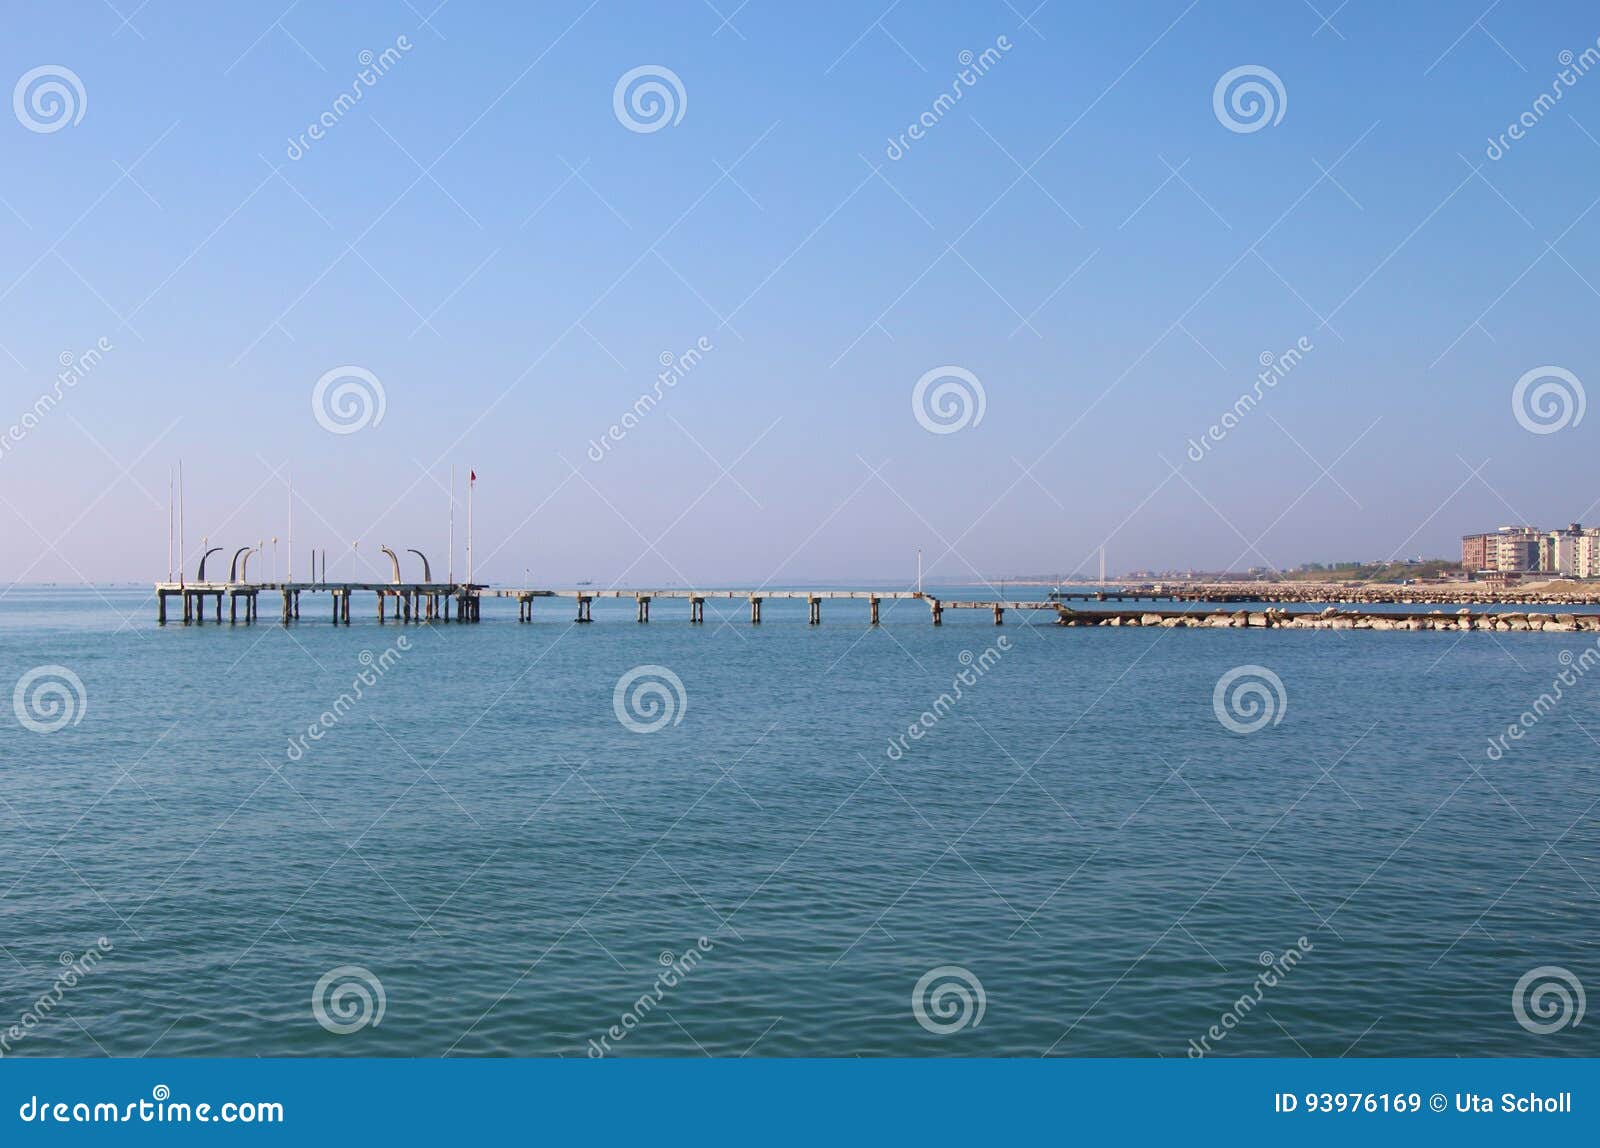 pier on the island lido di venezia, italy.